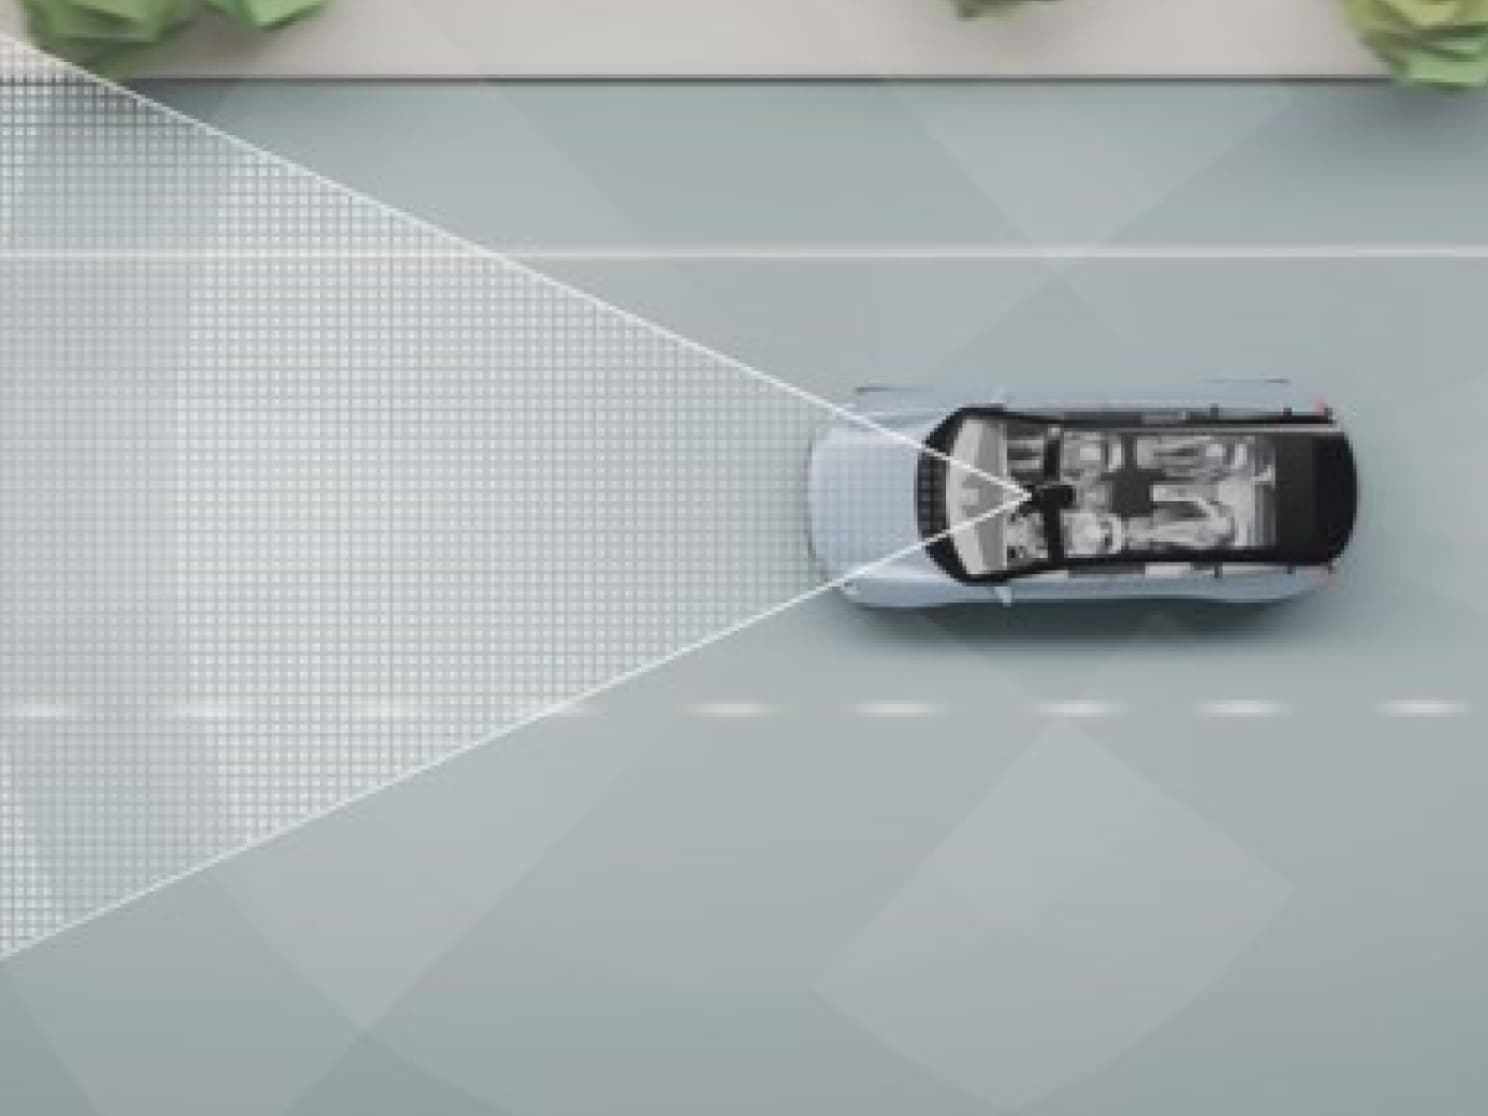 Цифрова візуалізація автомобіля на дорозі, разом із розміткою та іншими об’єктами.